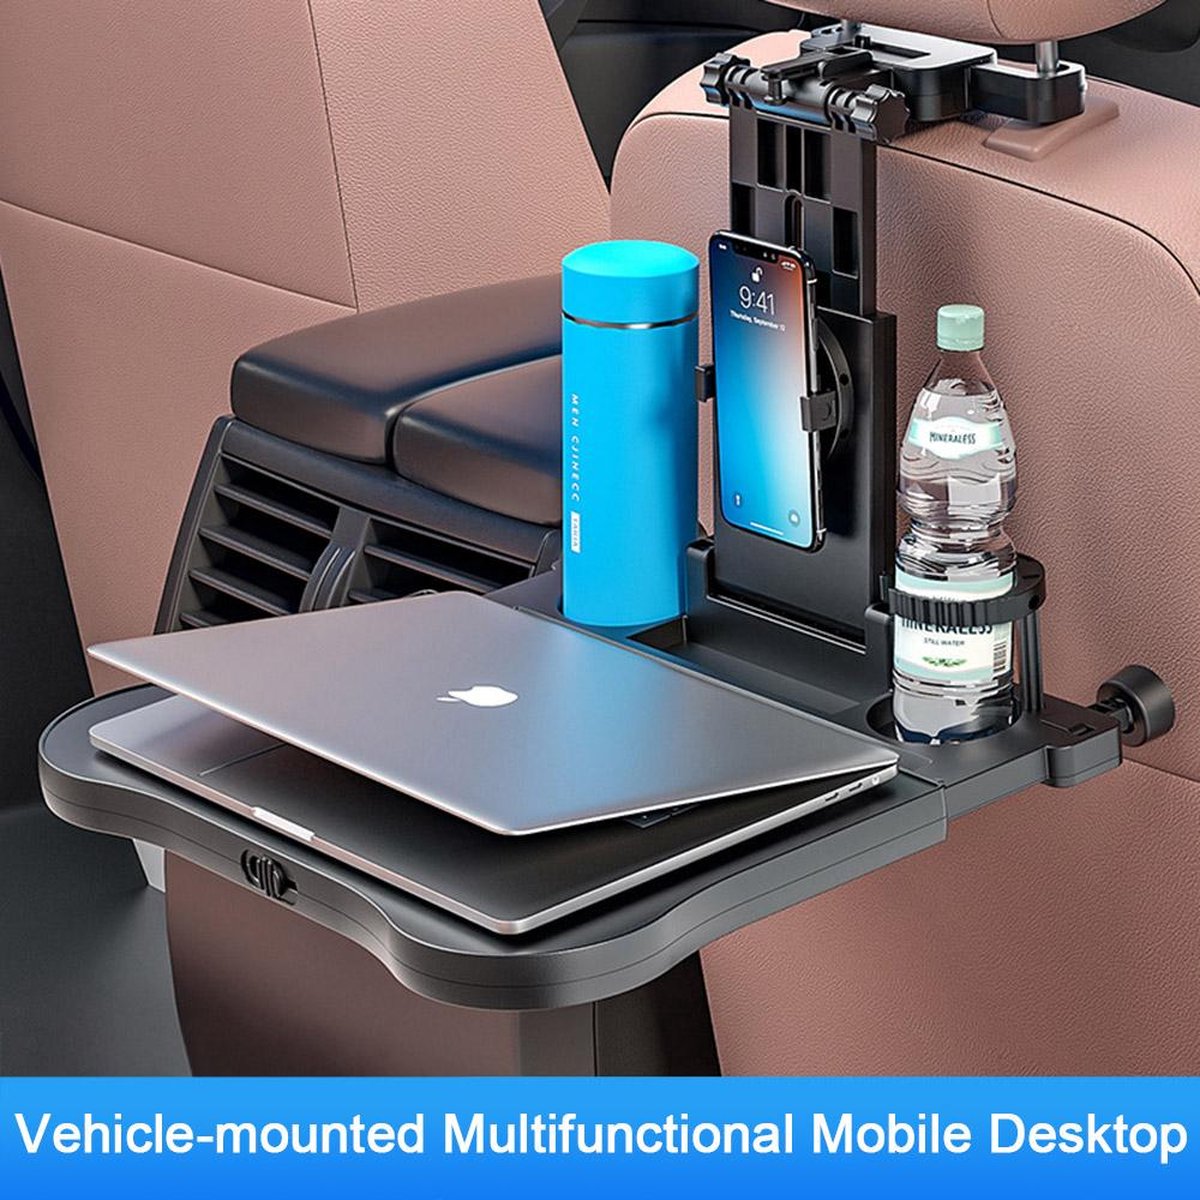 Table de voiture multifonction pour ordinateur portable siège